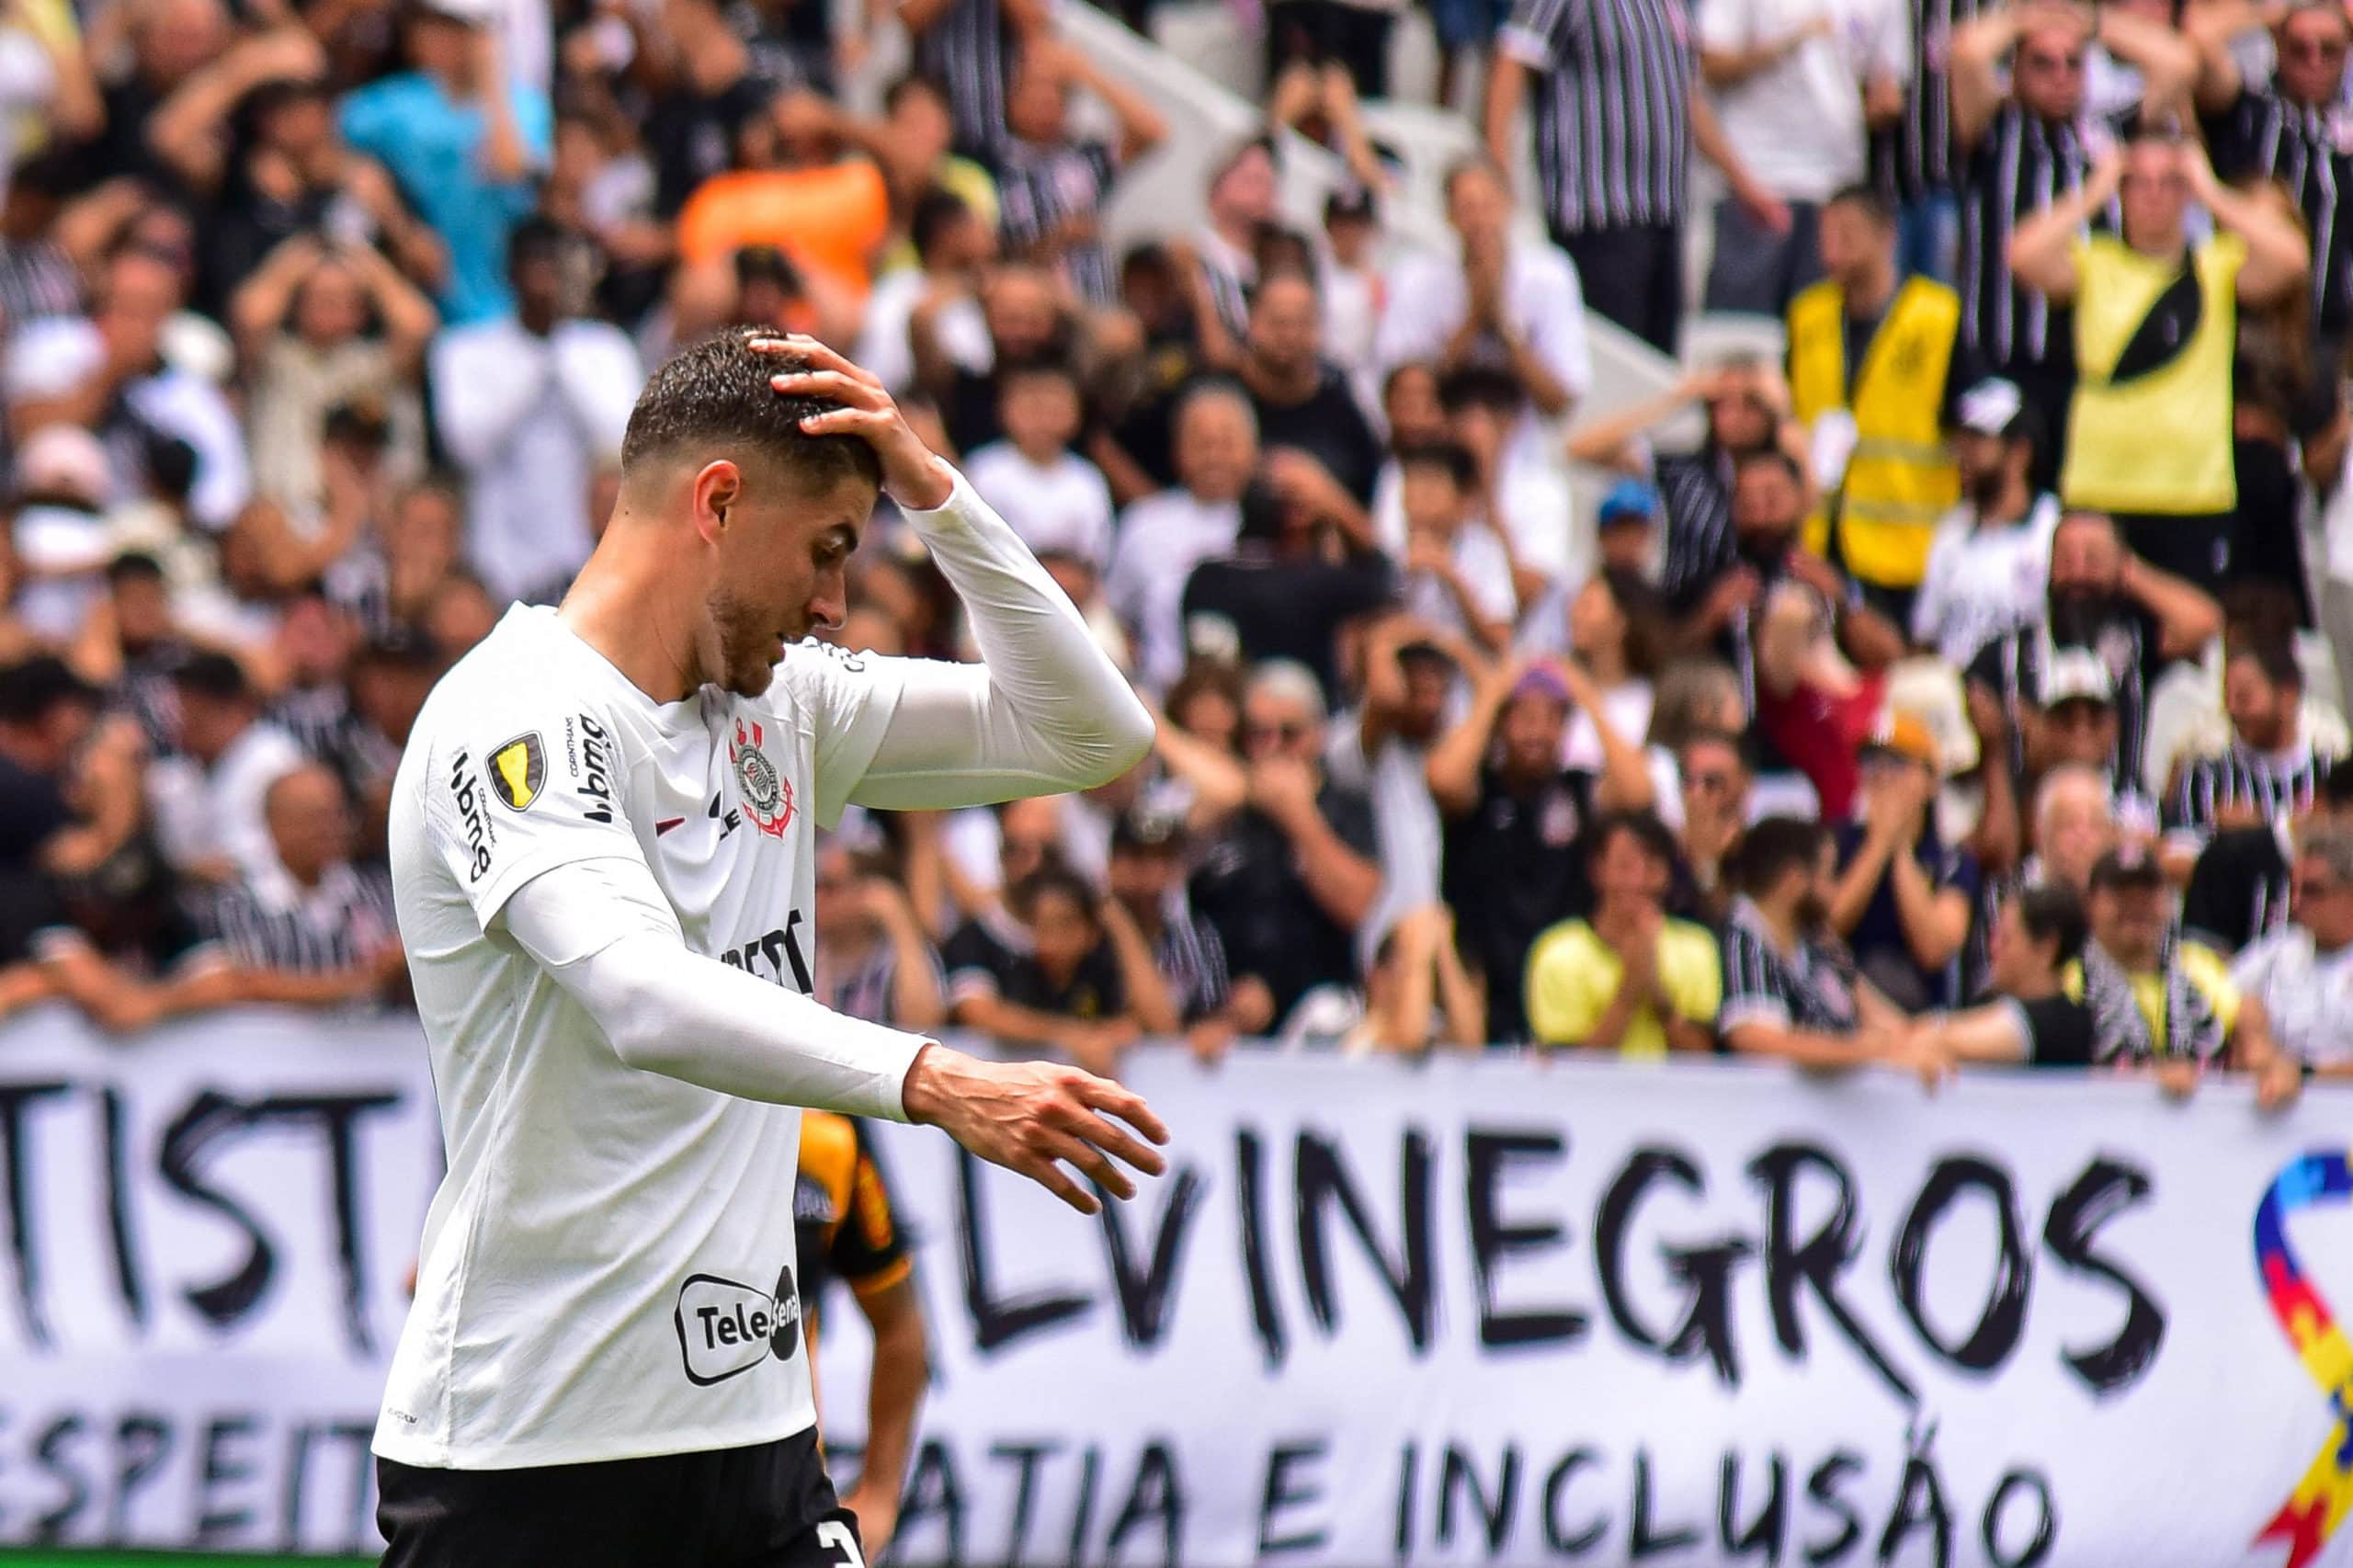 Pedro Raul fez a sua estreia pelo Corinthians, mas passou em branco